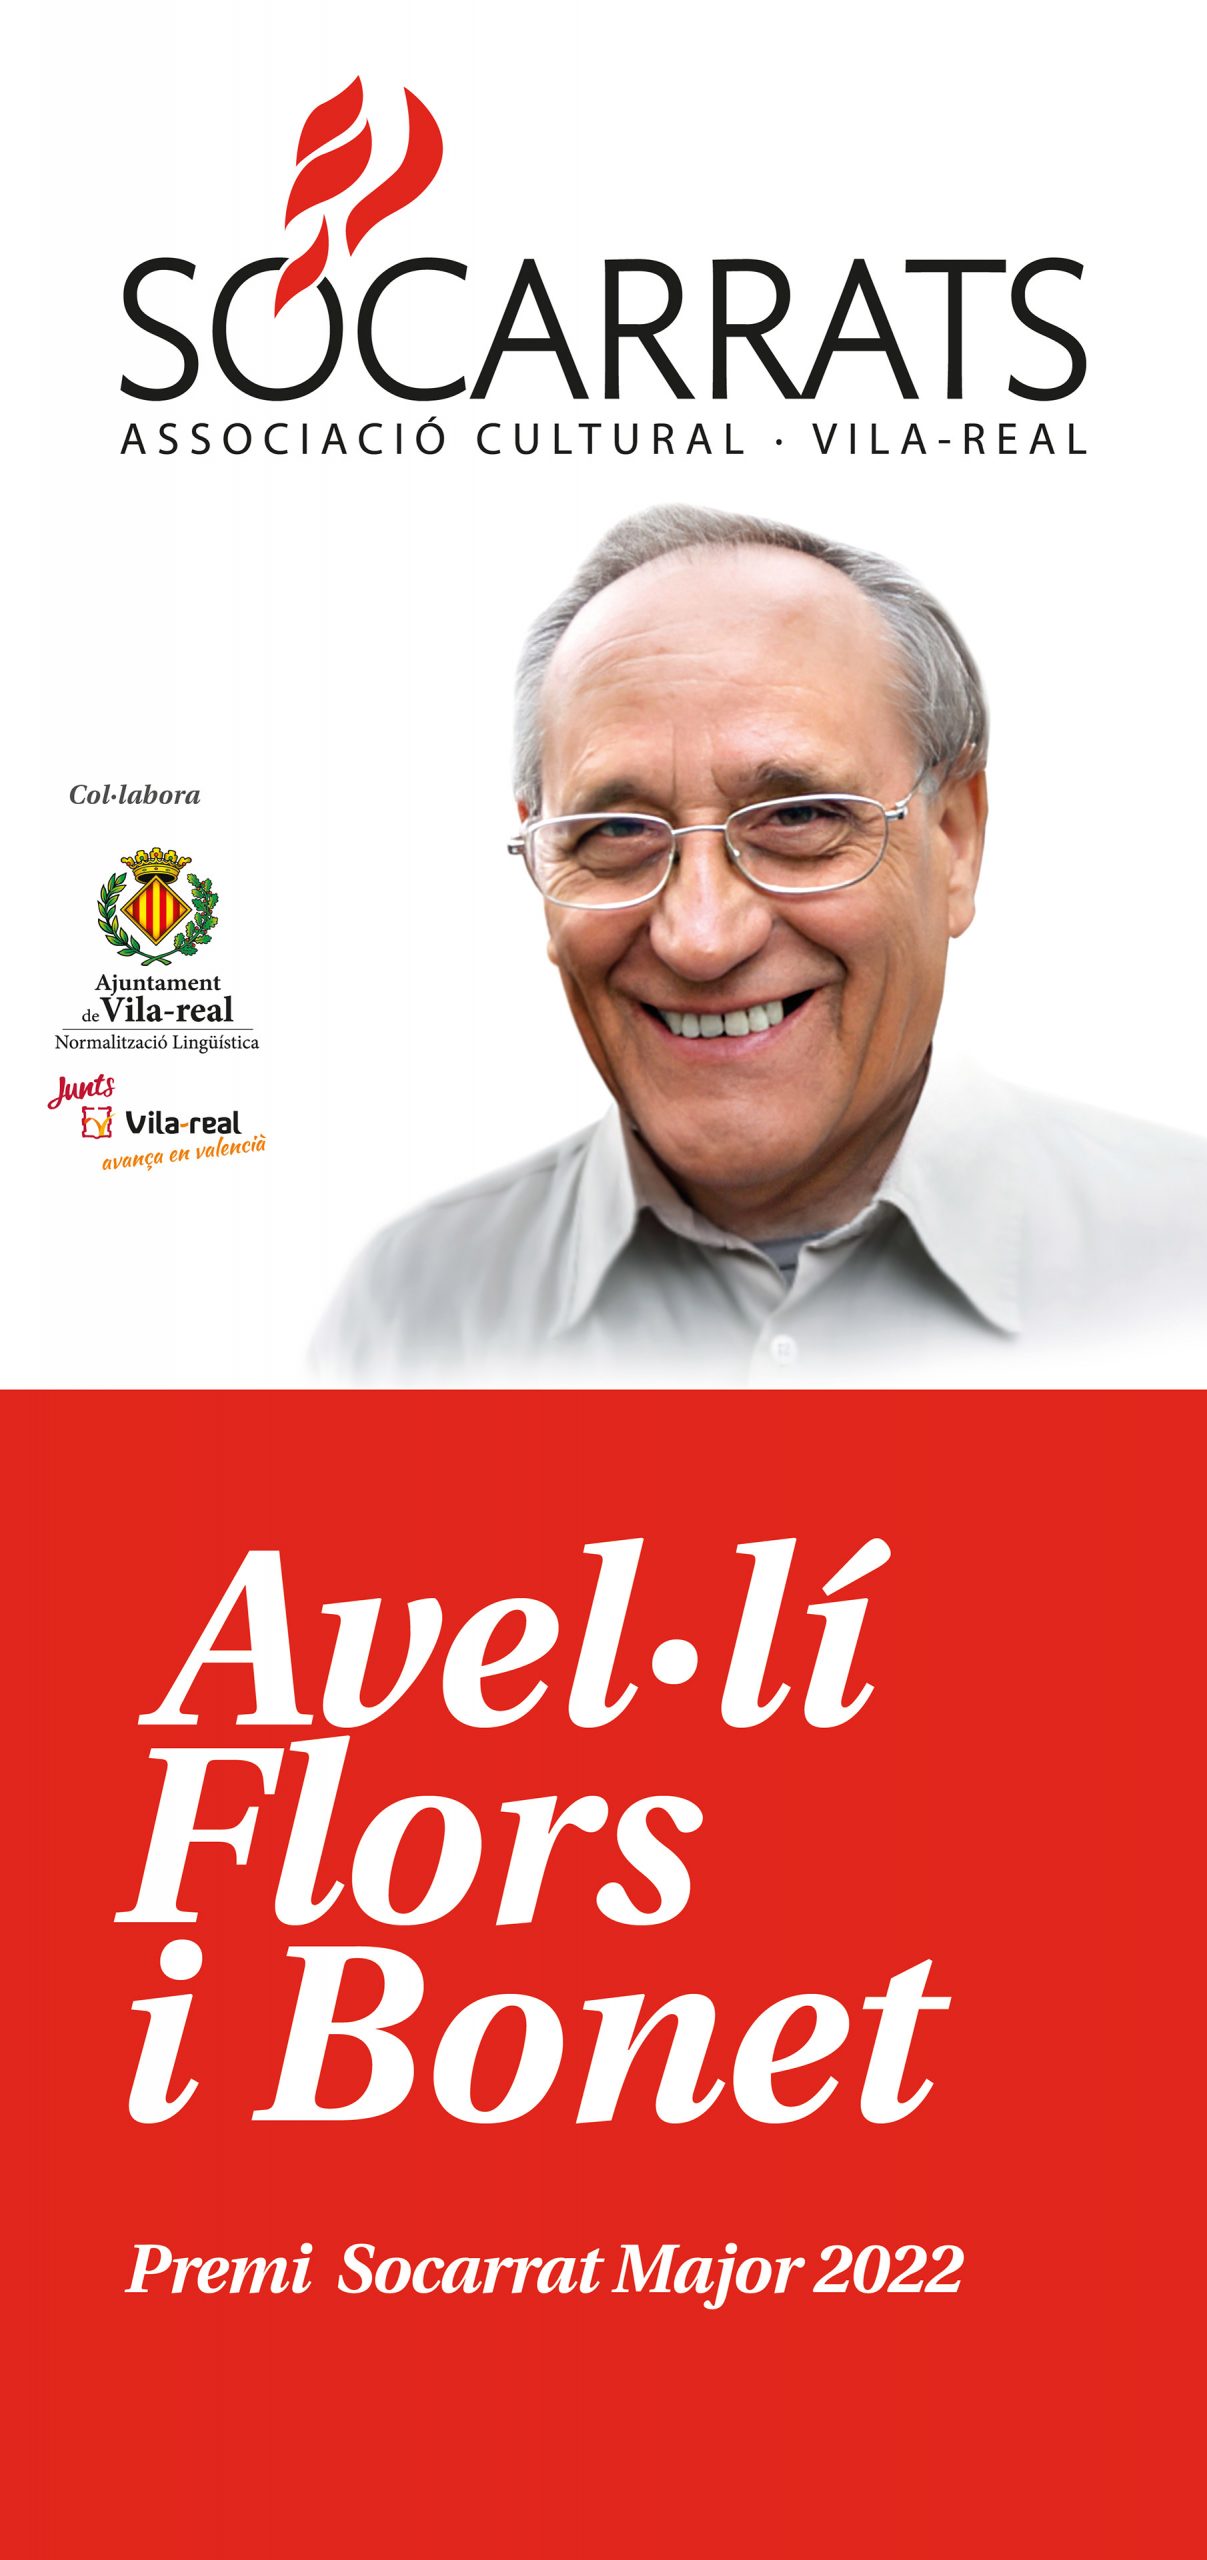 Avel·lí Flors, Socarrat Major 2022 de Vila-real